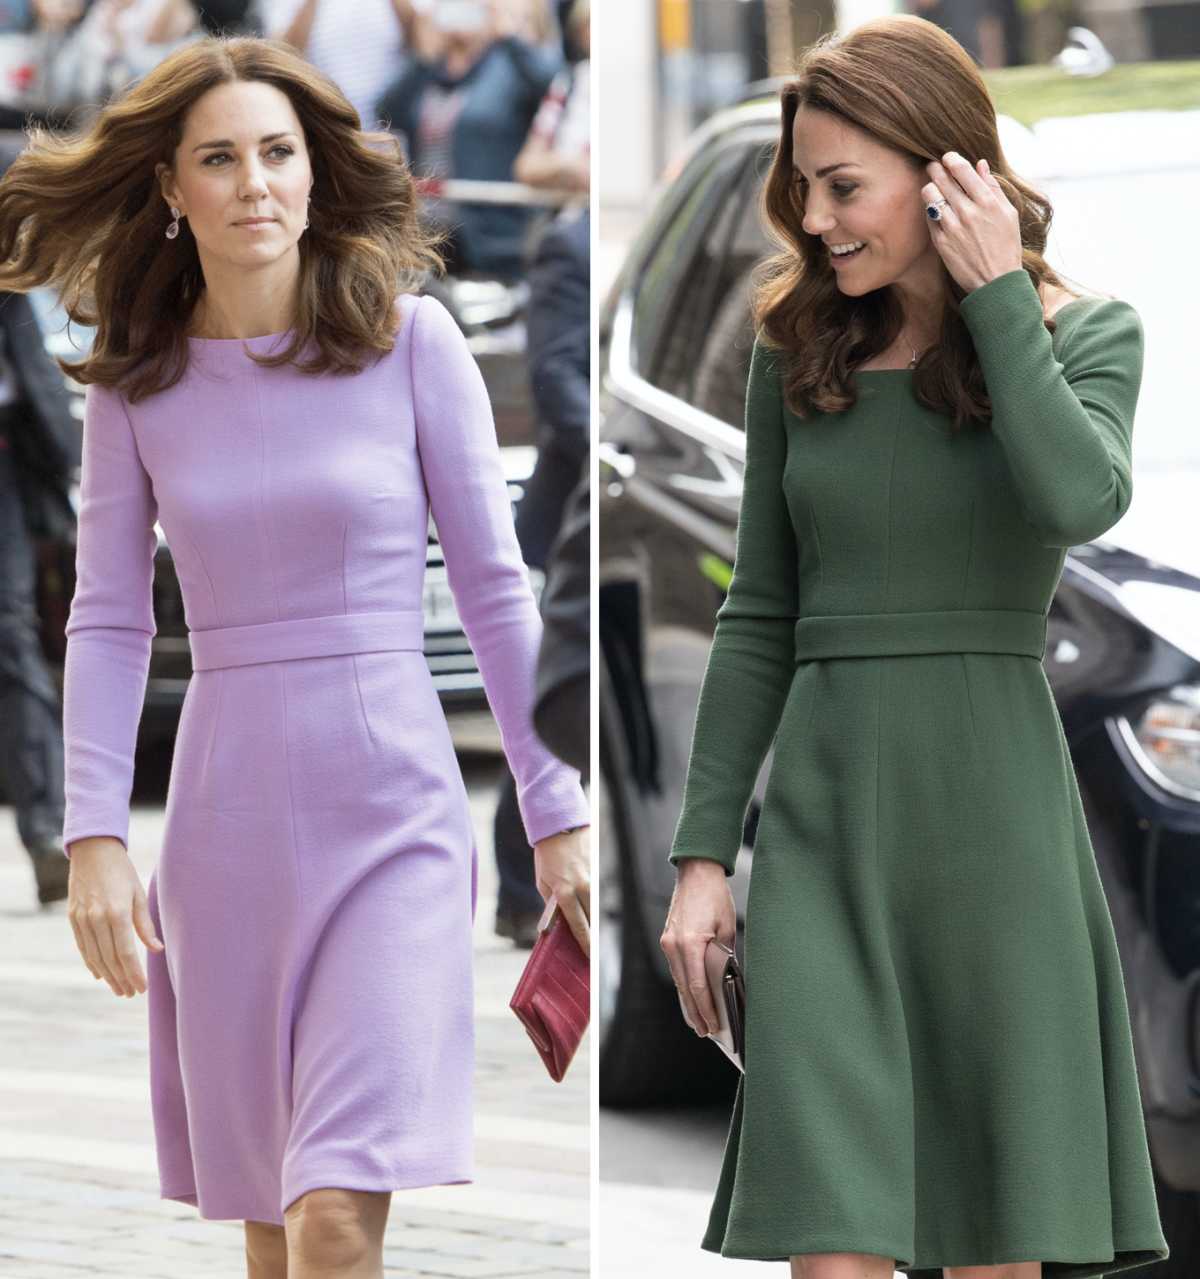 Kate Middleton emilia wickstead dress side by side